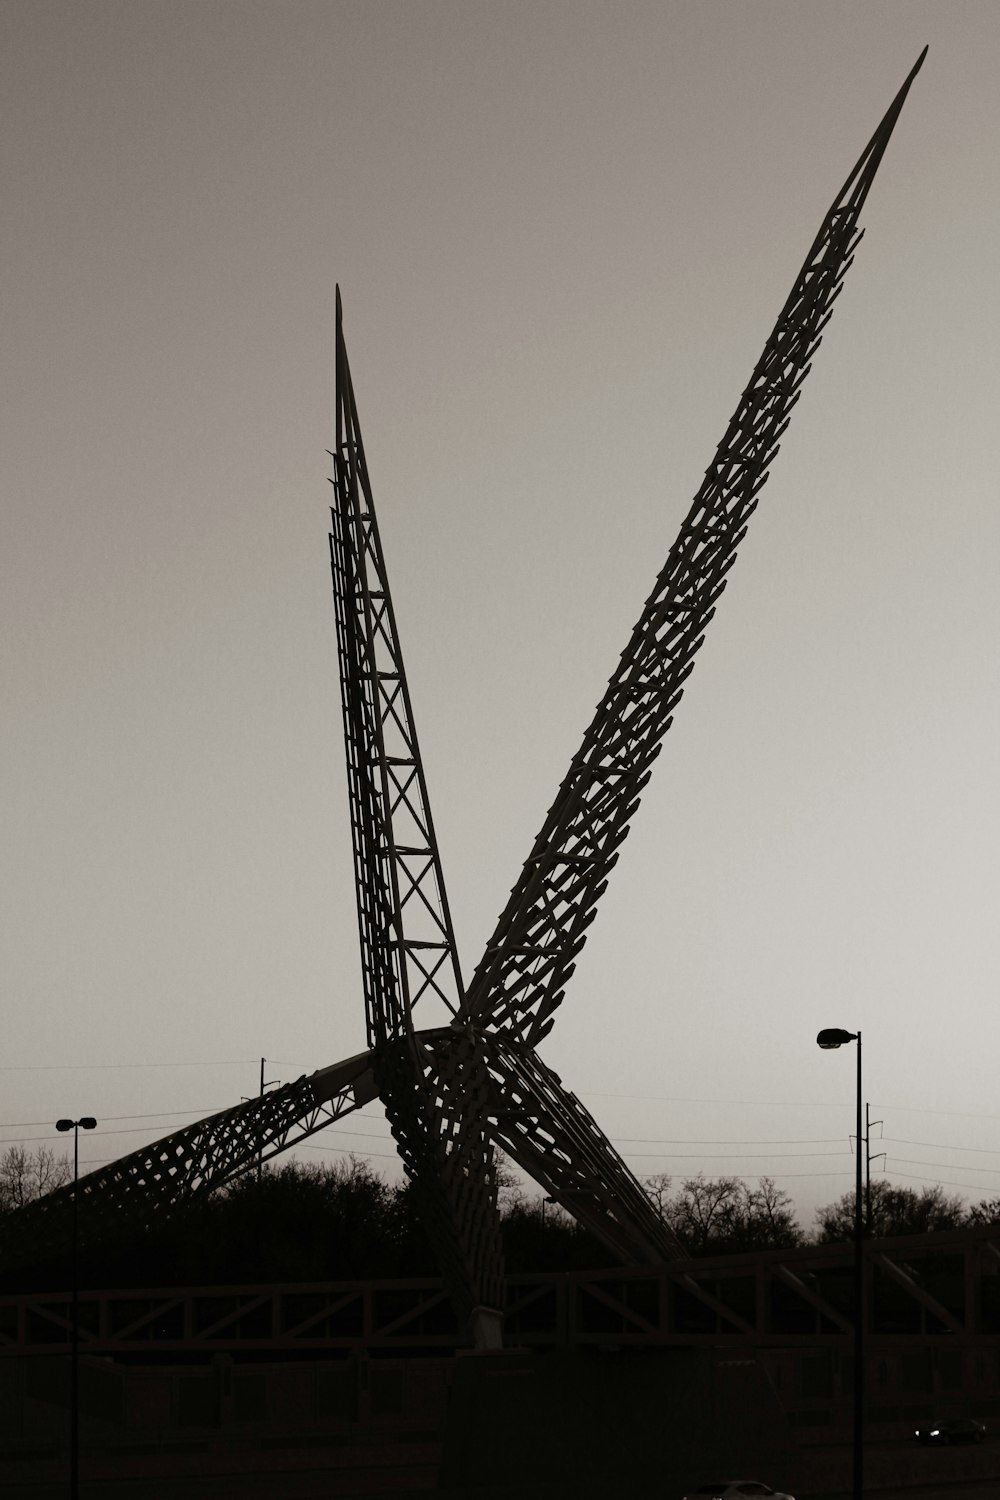 a large crane next to a bridge